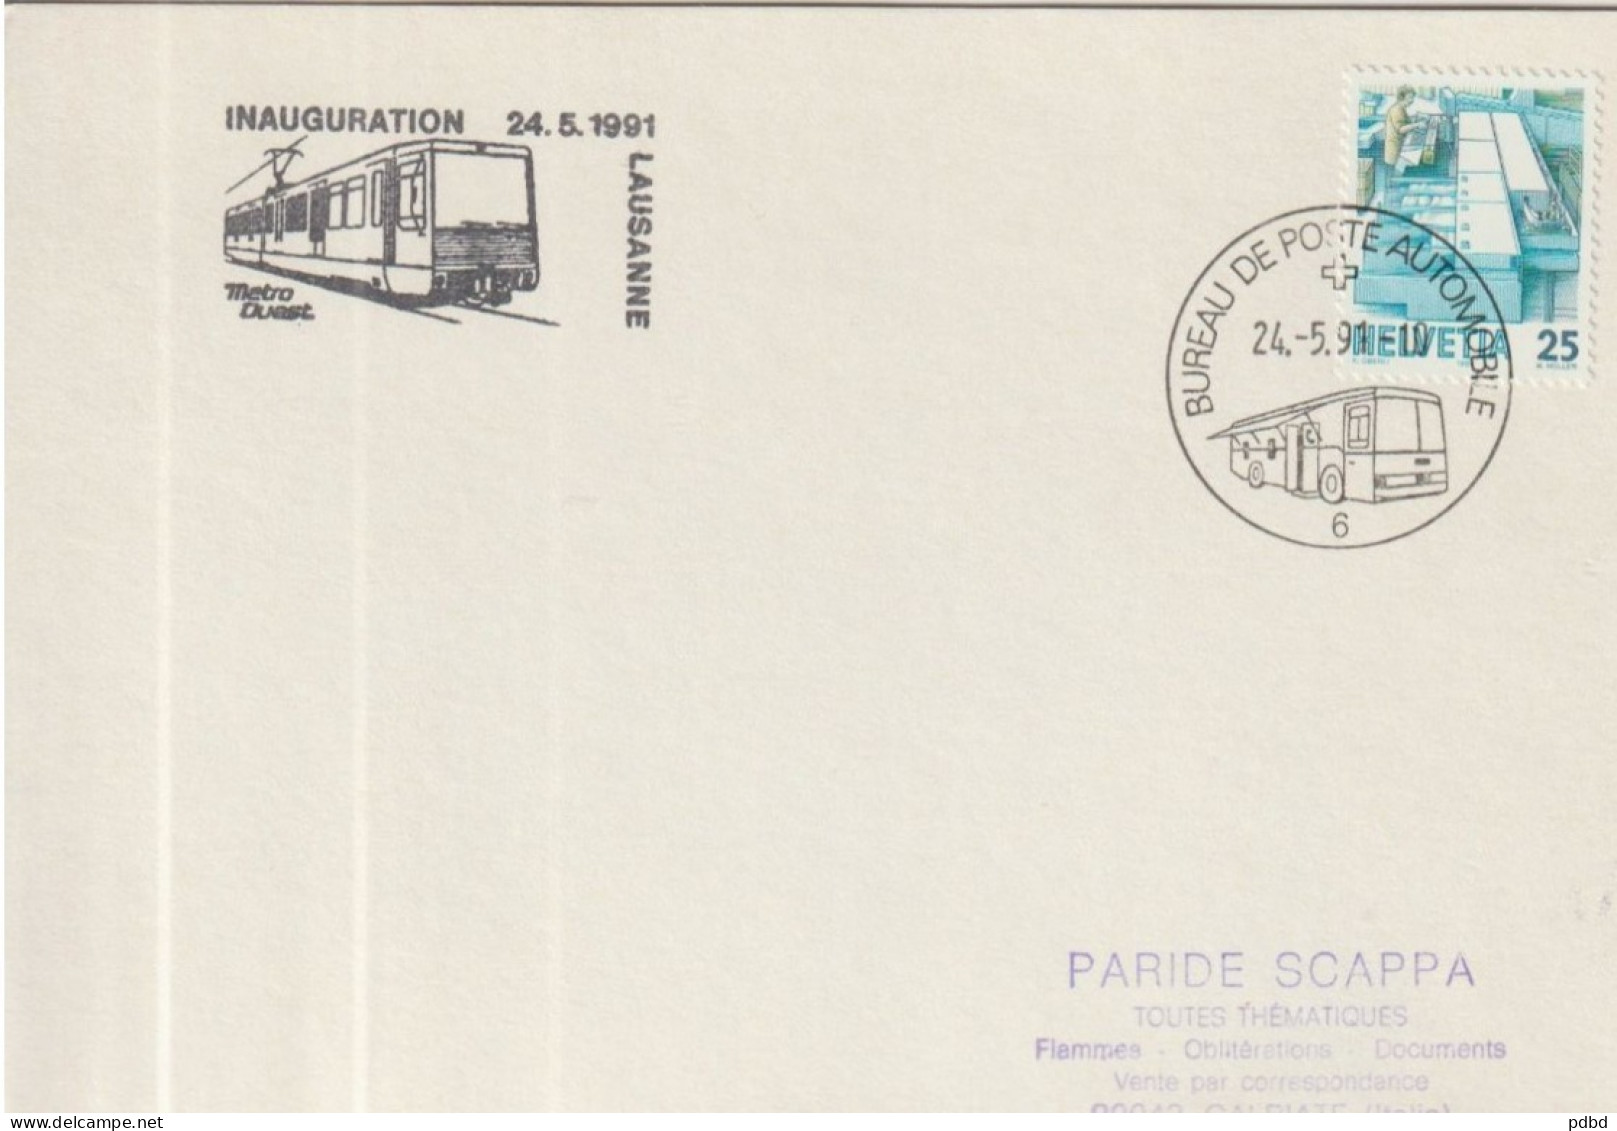 ETR FER 07 . Carton Format Enveloppe  . Suisse . Bureau De Poste Automobile 6 . Cachet Inauguration Métro 1991 .Lausanne - Chemins De Fer